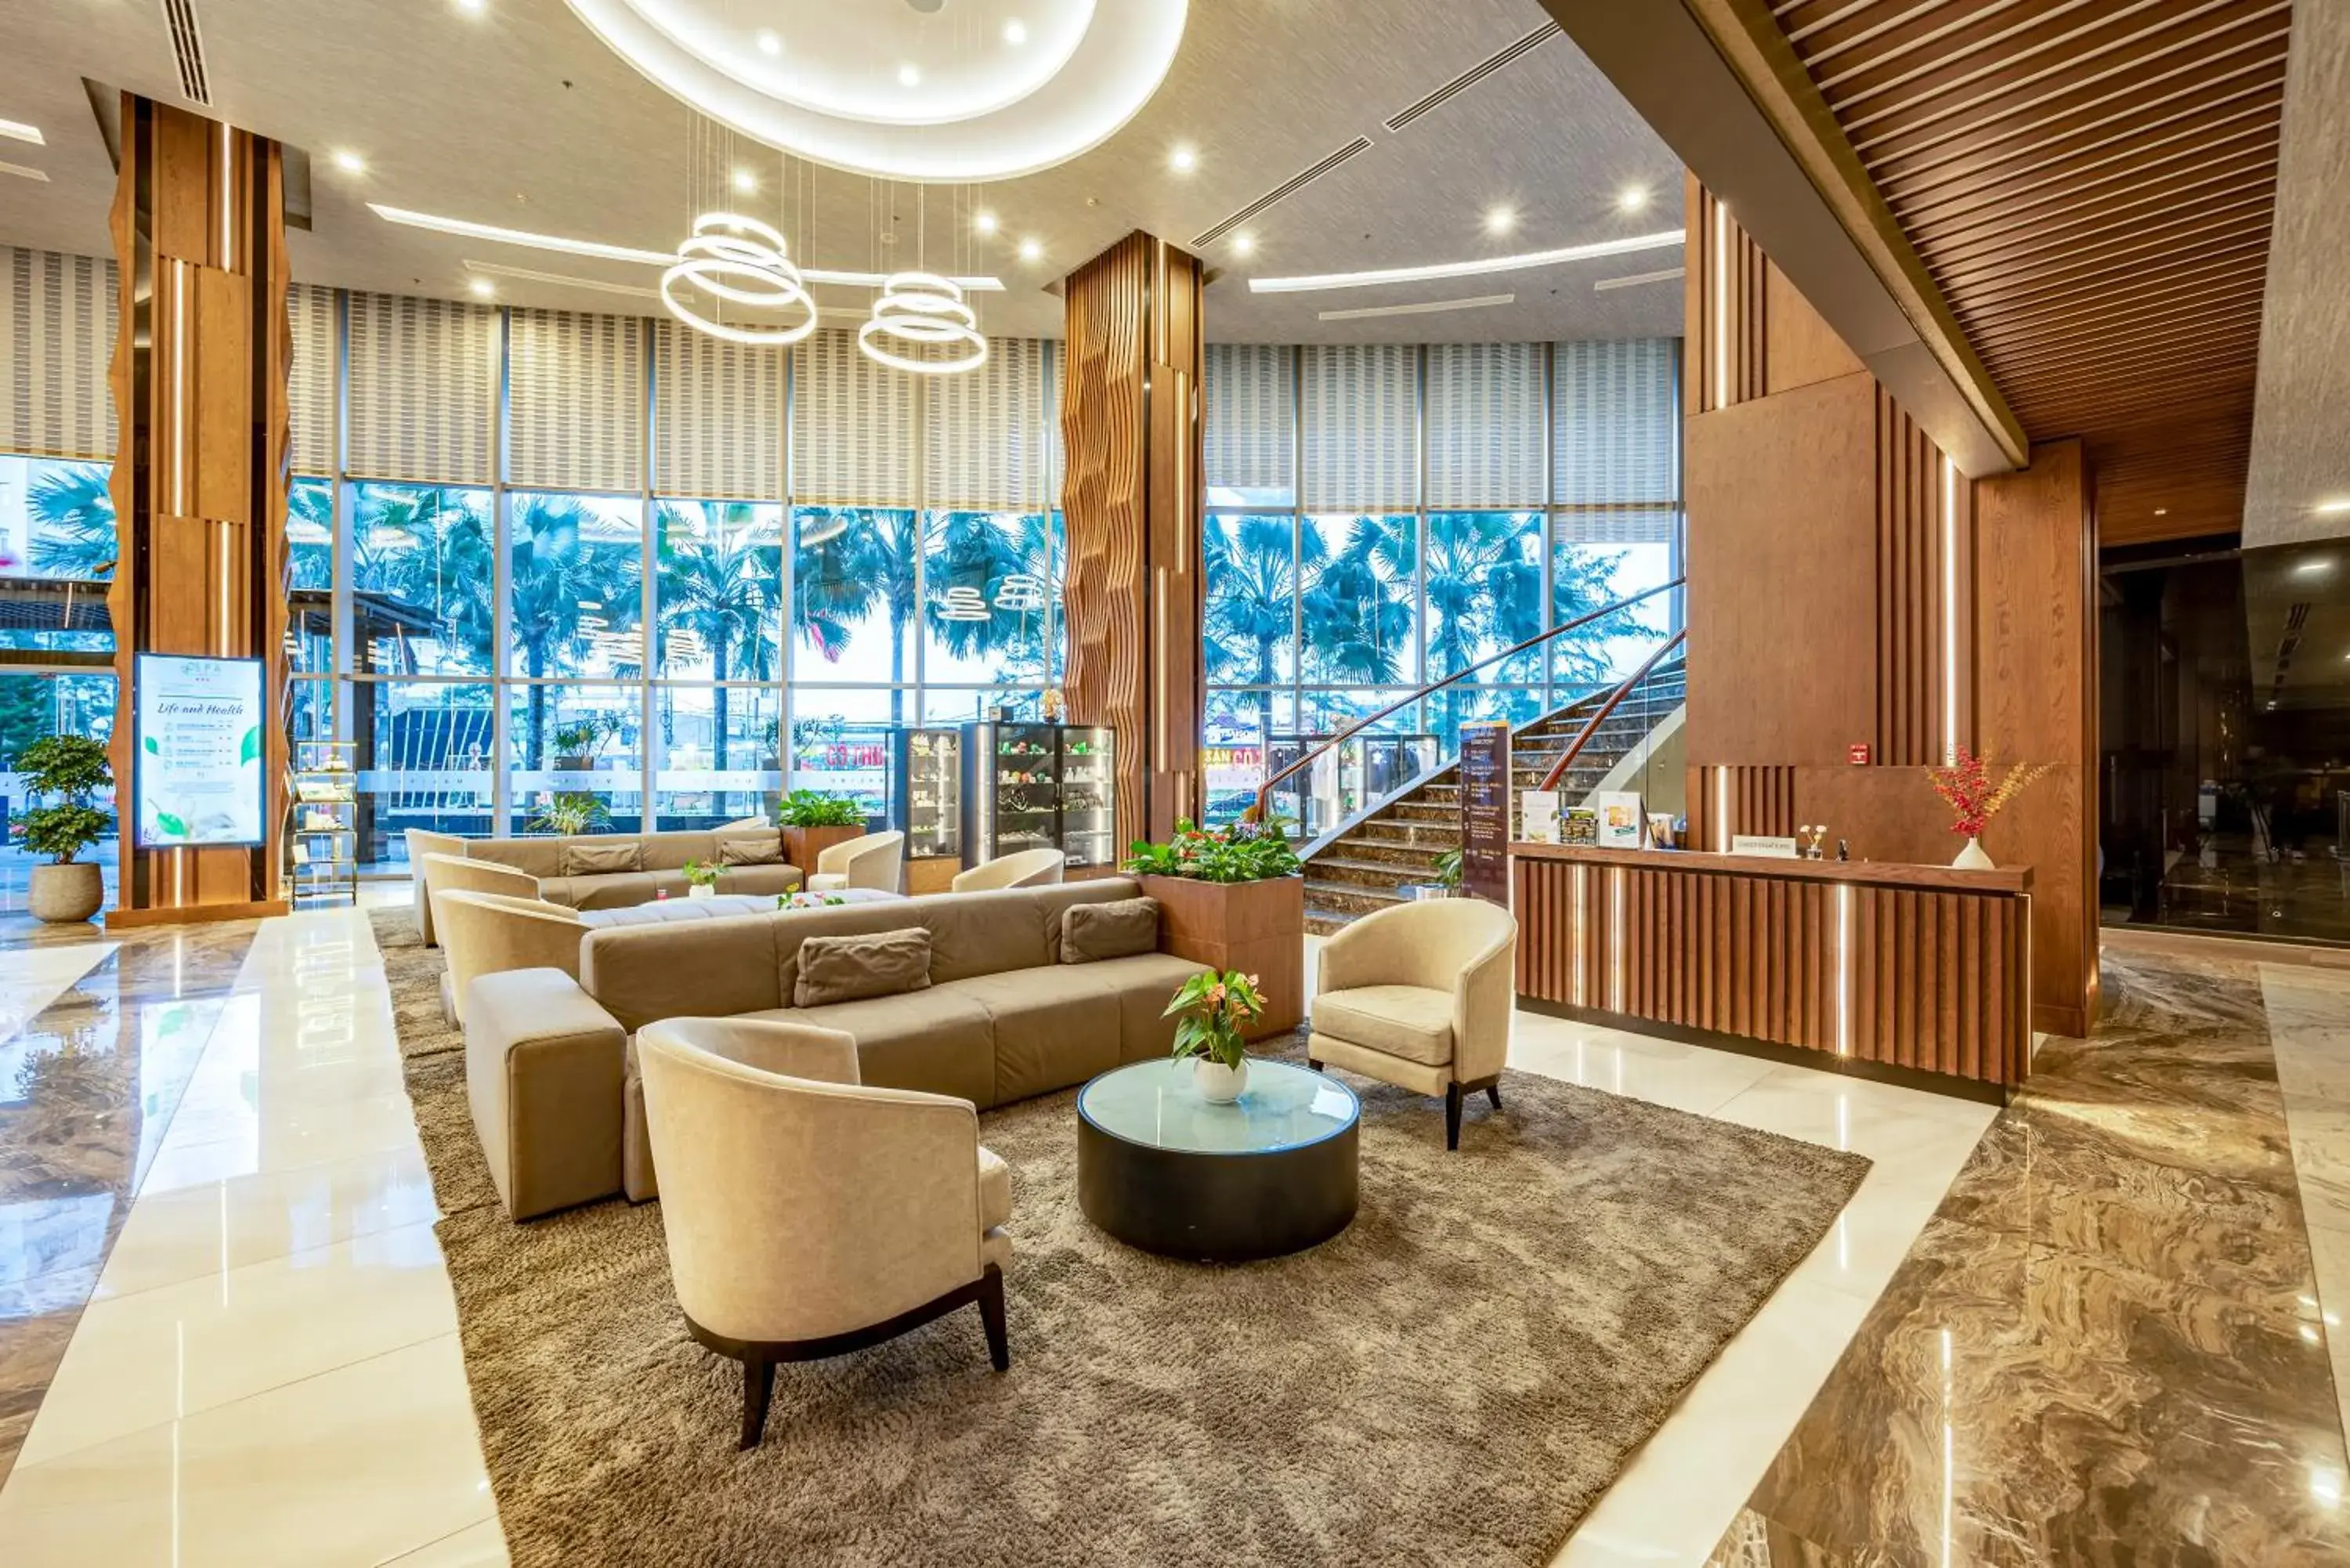 Lobby or reception in Malibu Hotel